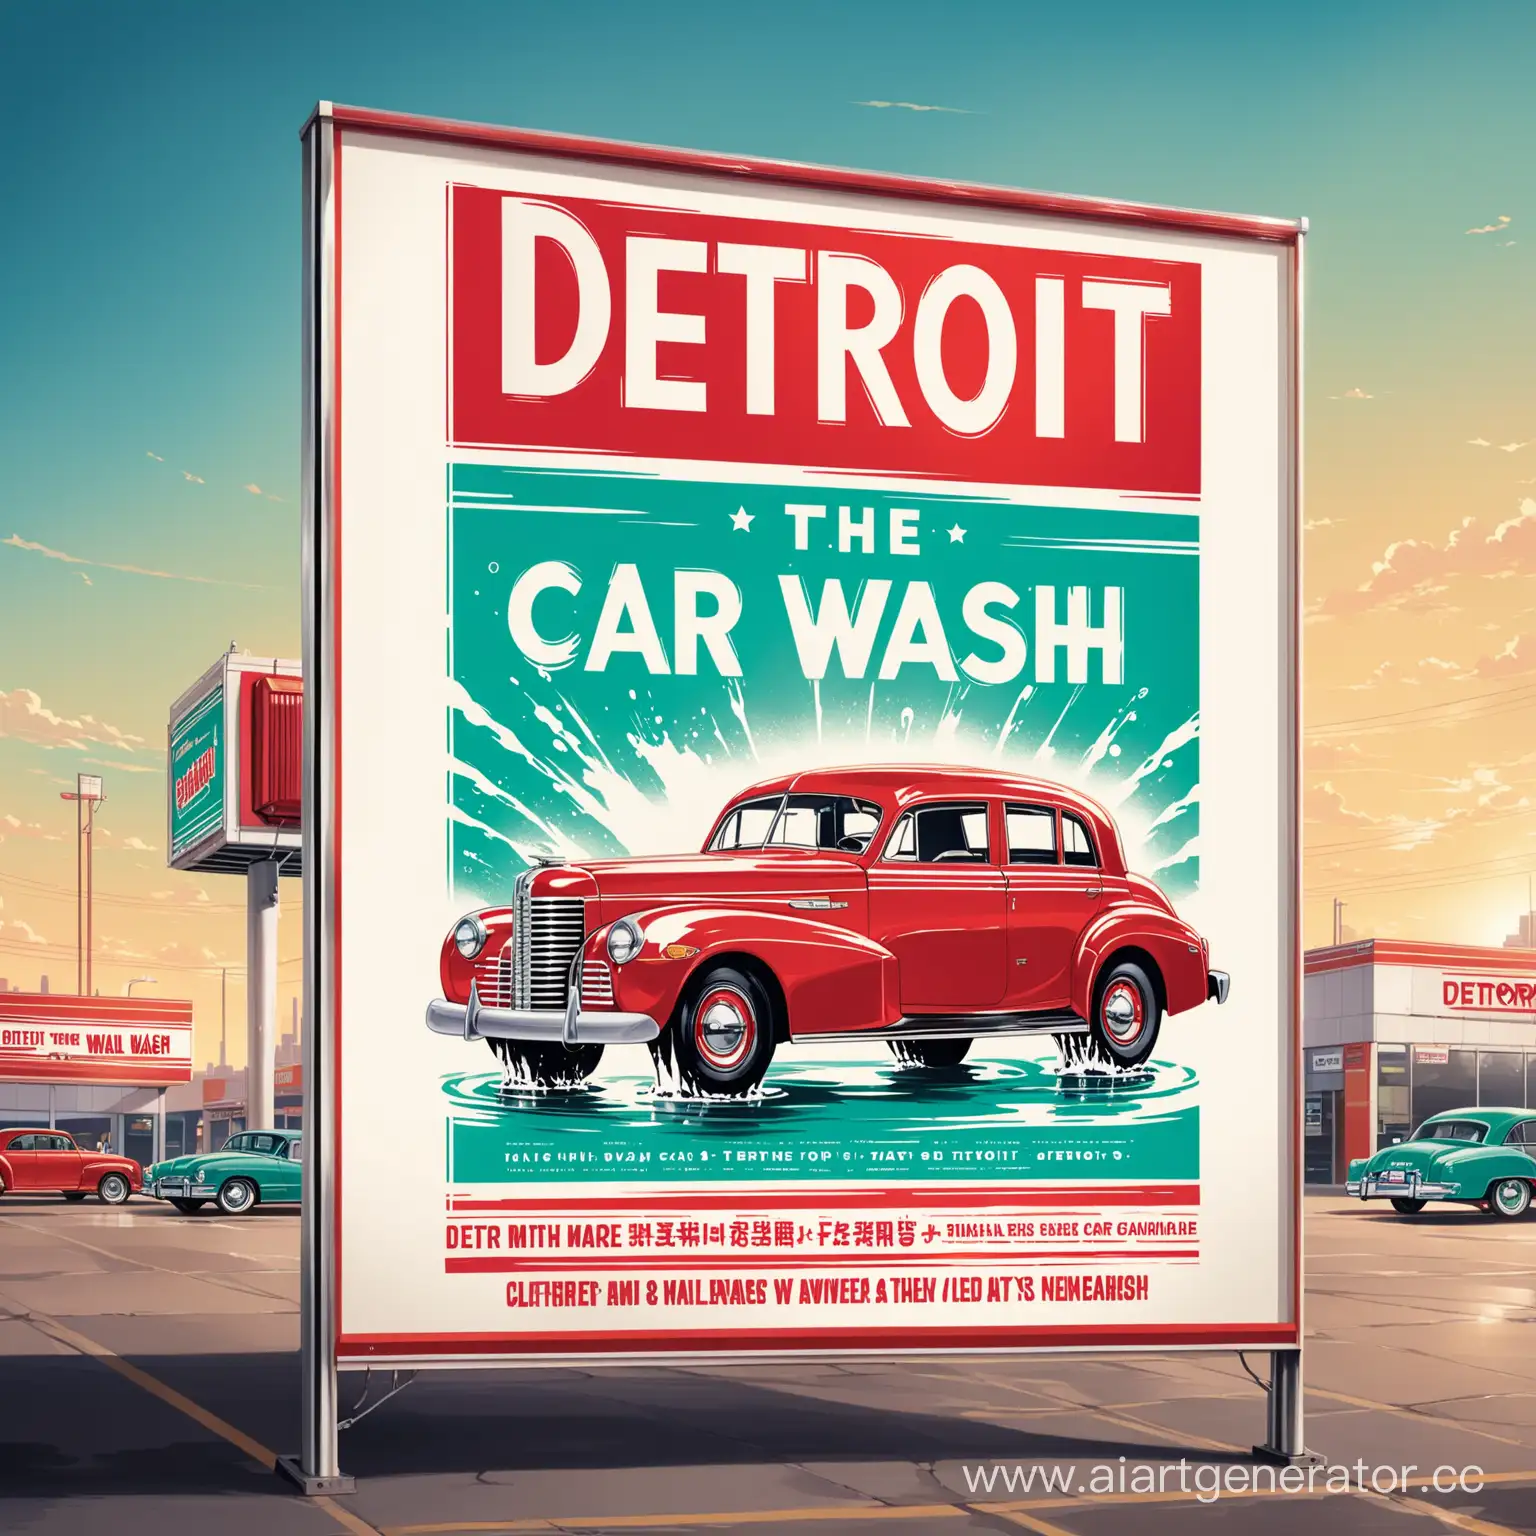 рекламный постер автомойка с названием "Детроит"